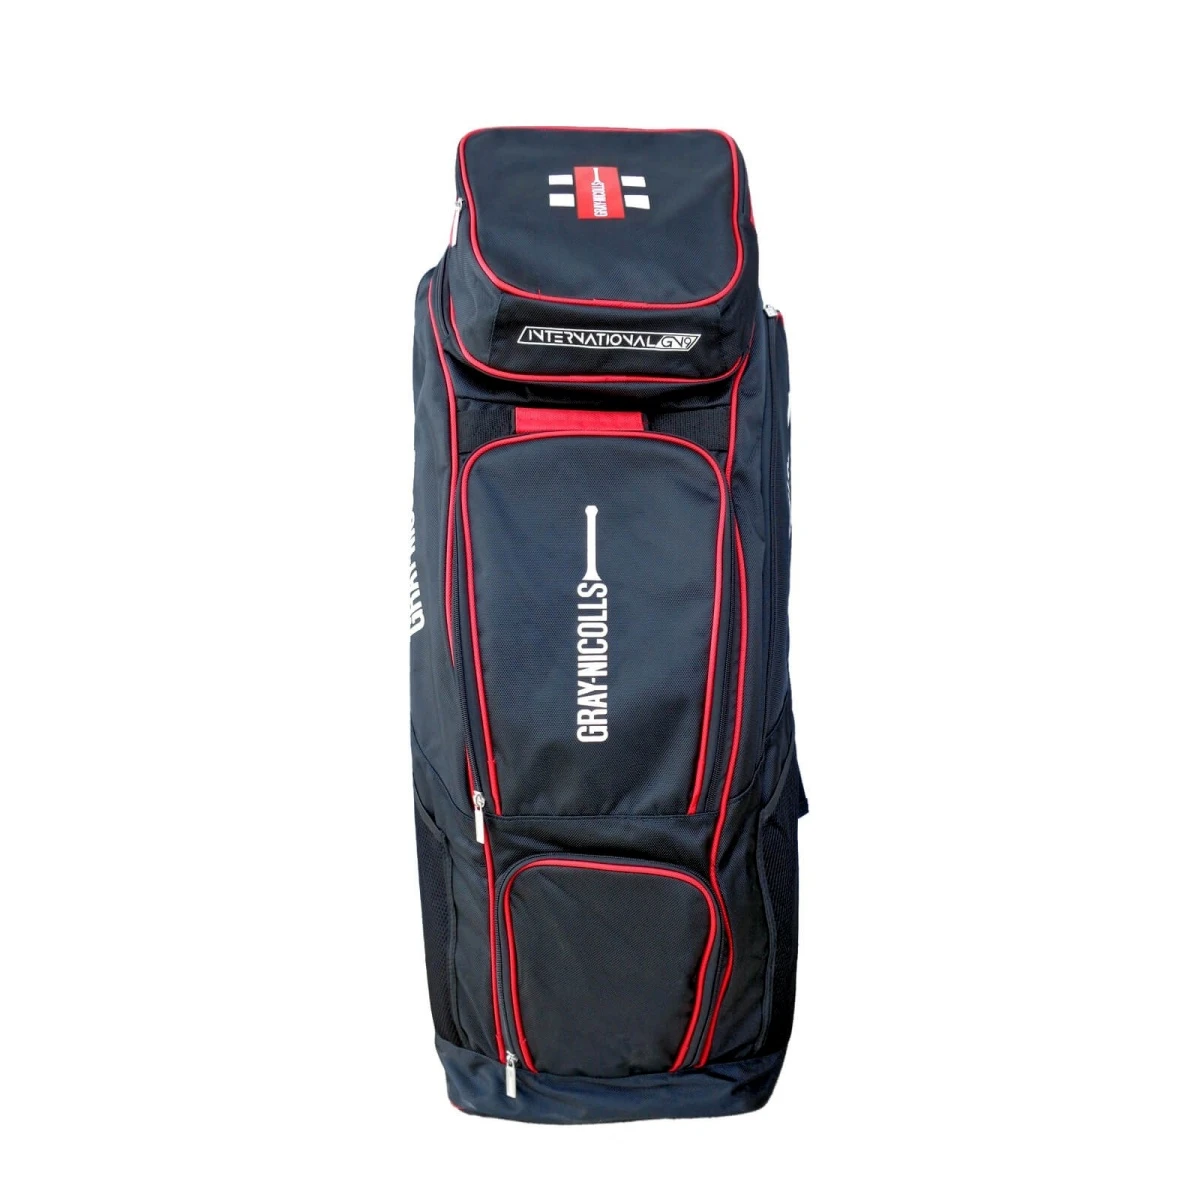 Masuri E Line Pro Wheel Bag | Masuri UK